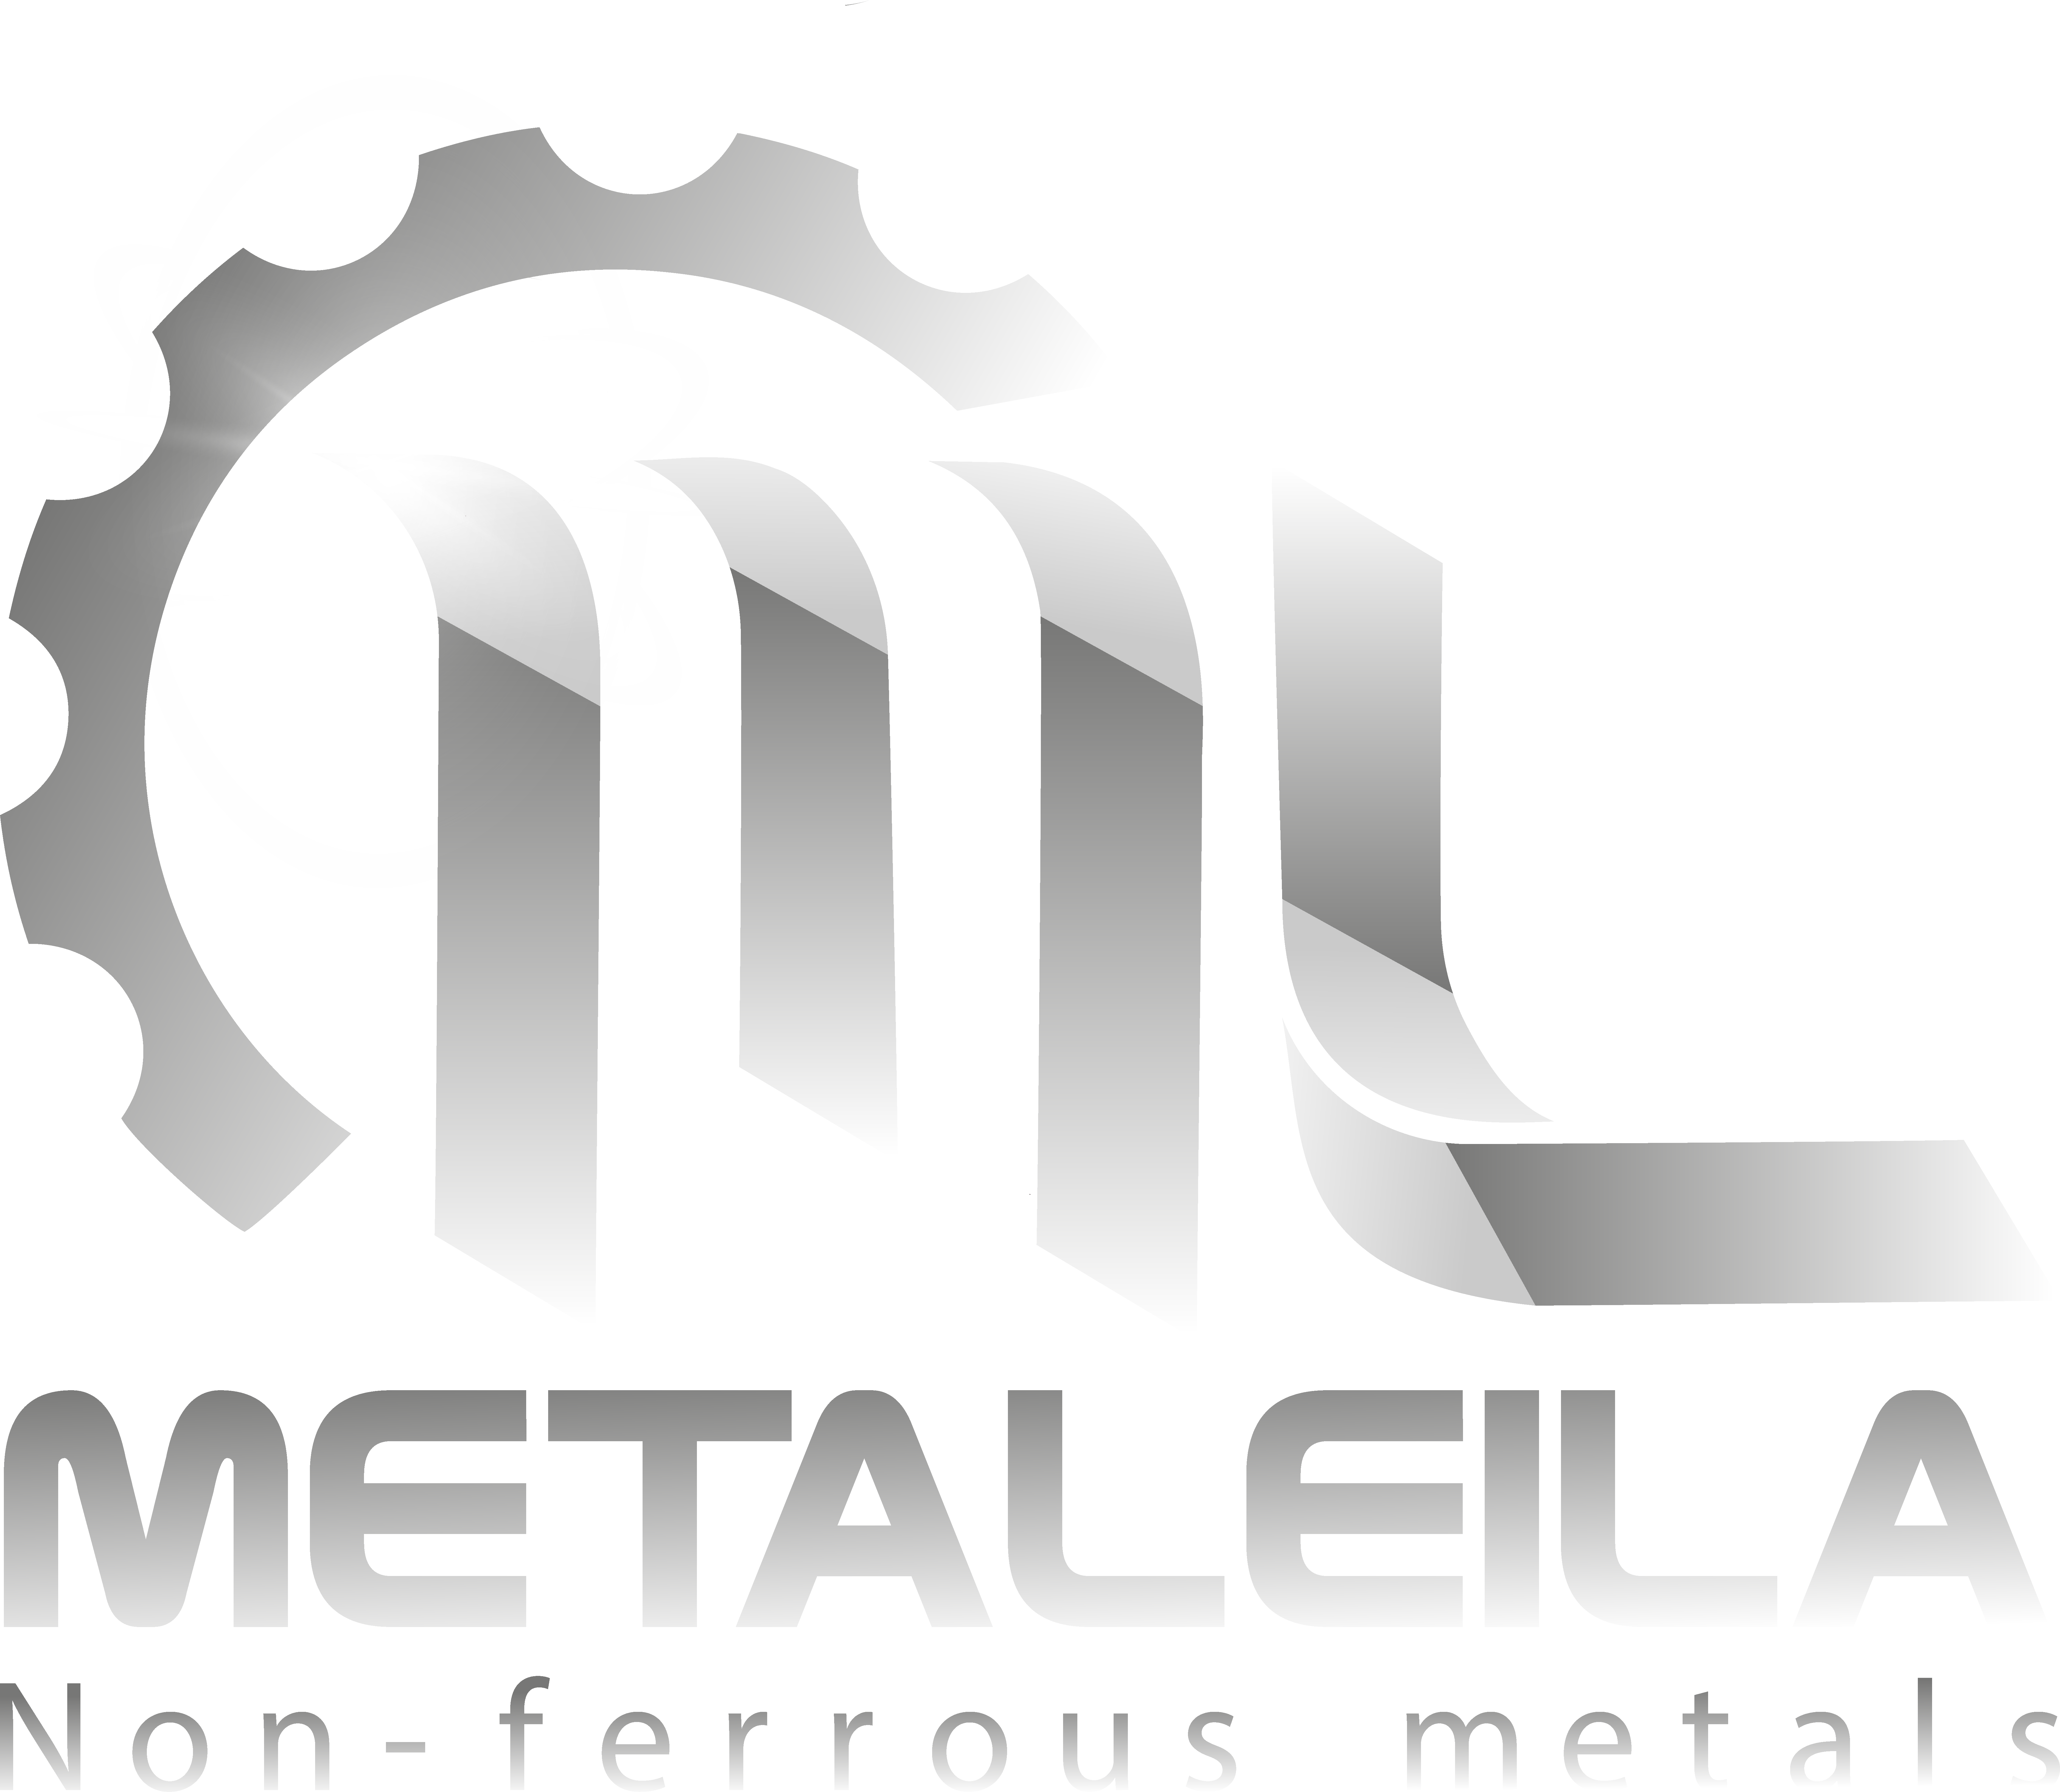 Metaleila